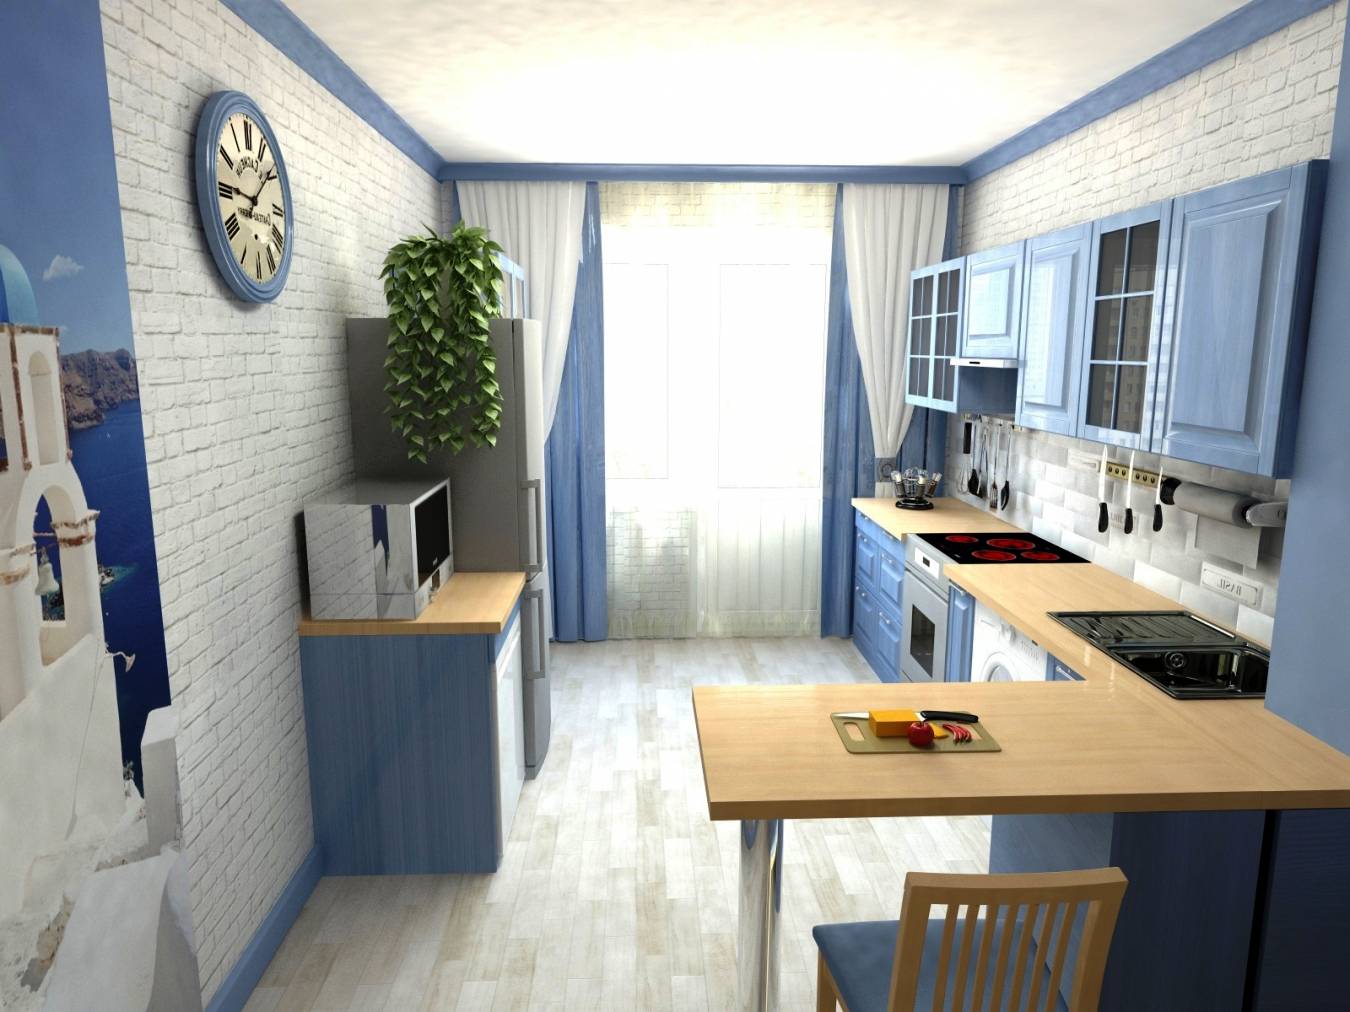 Узкая кухня - 120 фото удобного и современного дизайна длиной кухни